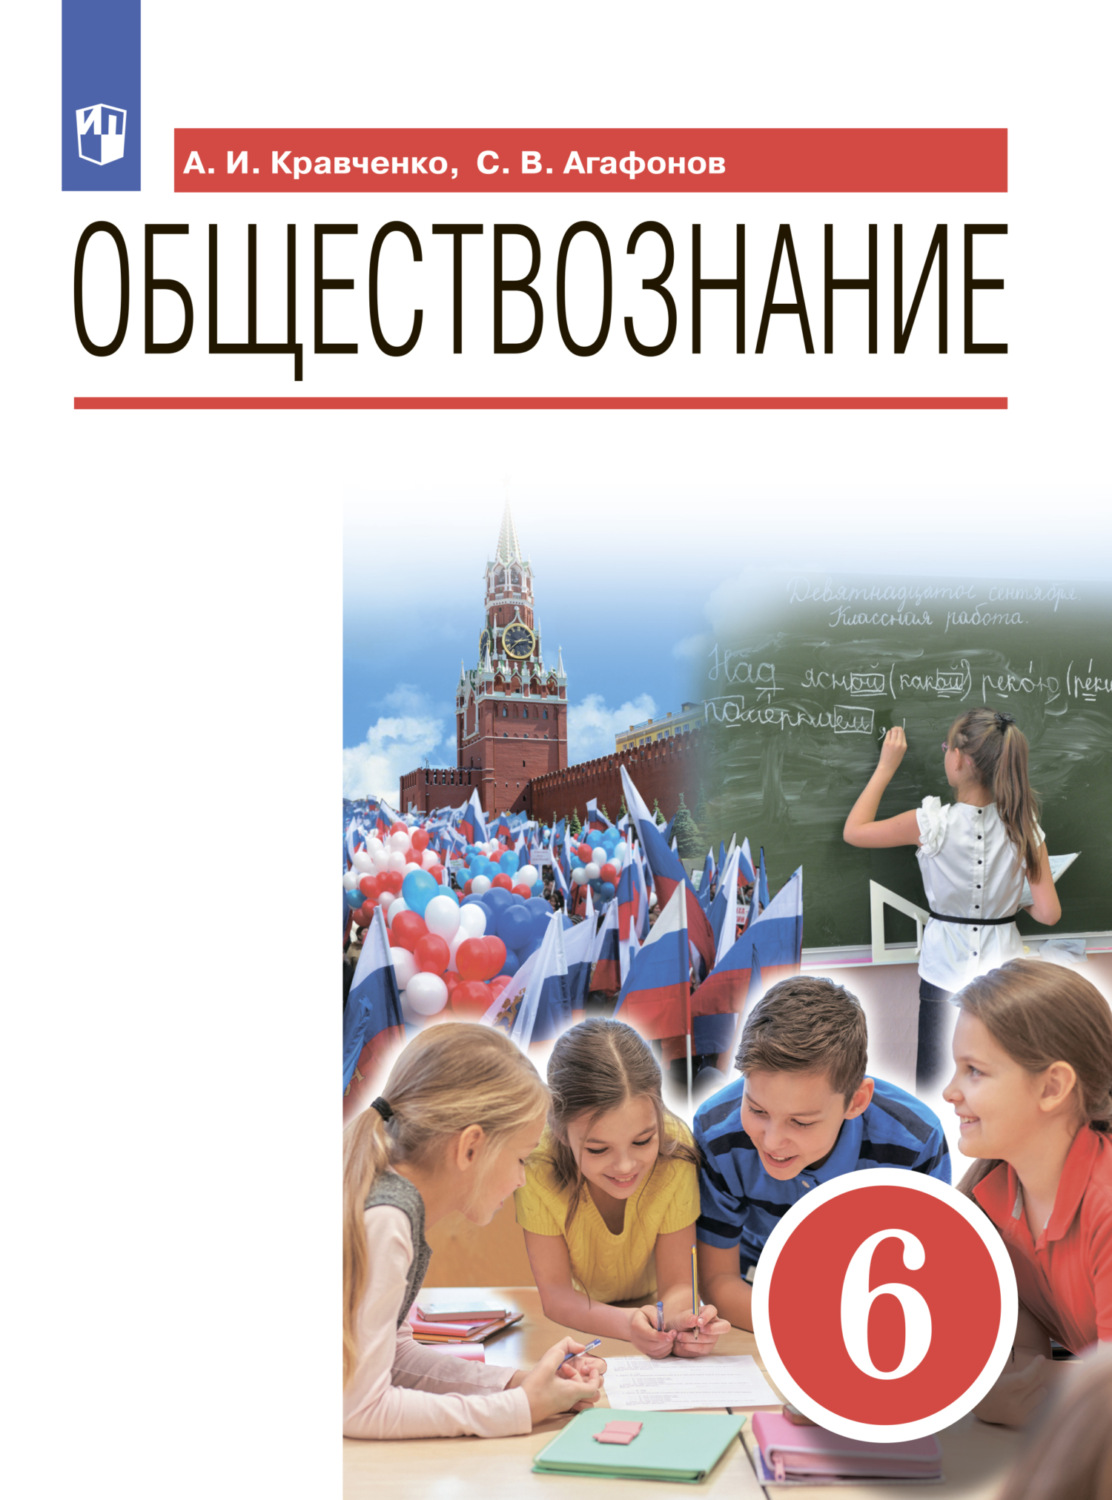 ГДЗ РФ - готовые домашние задания, решебники